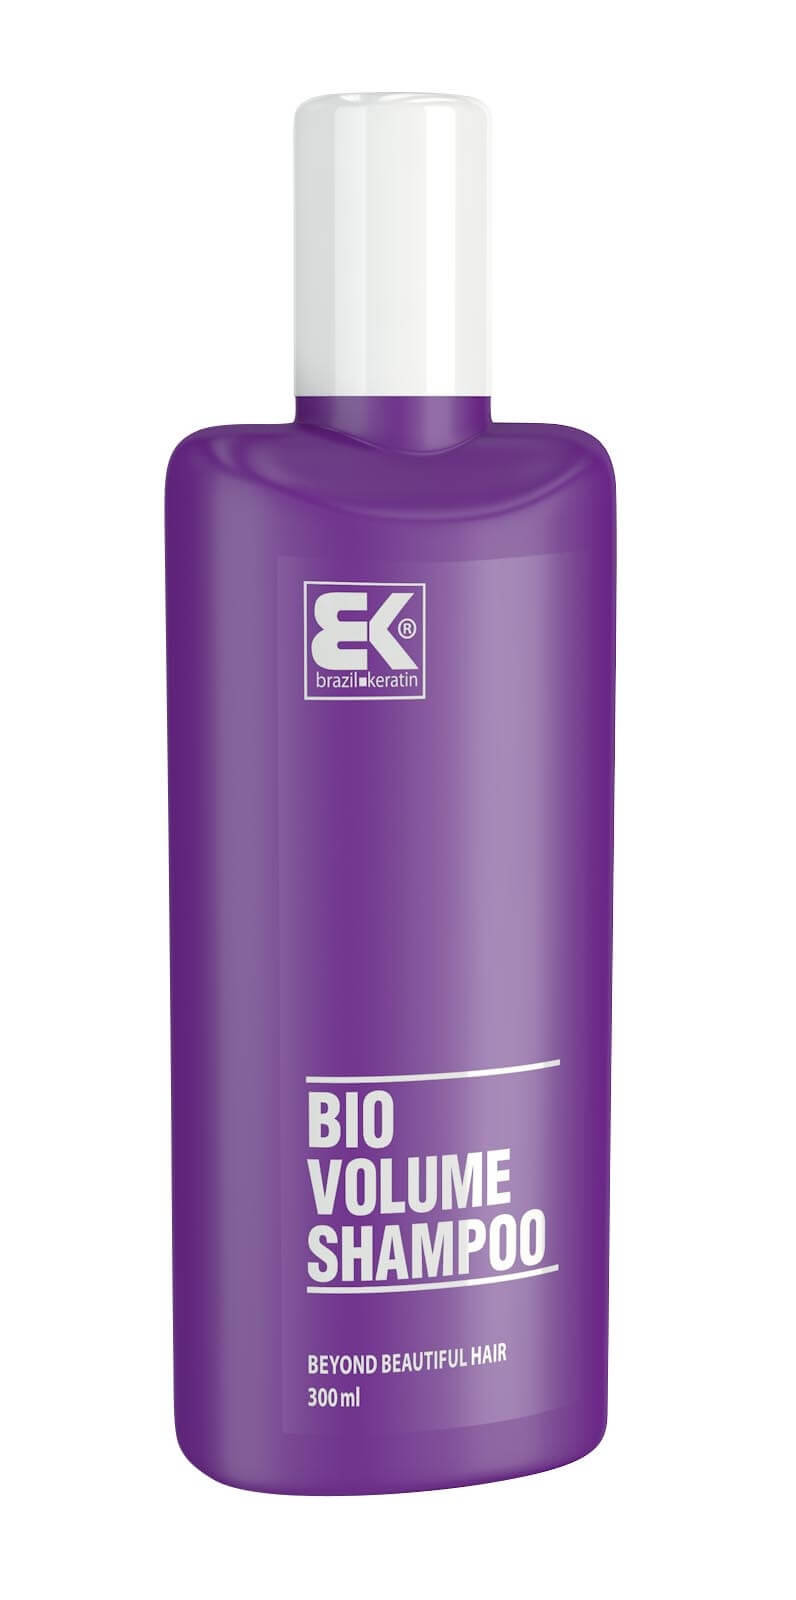 Brazil Keratin Šampón pre objem vlasov (Shampoo Volume Bio) 300 ml + 2 mesiace na vrátenie tovaru